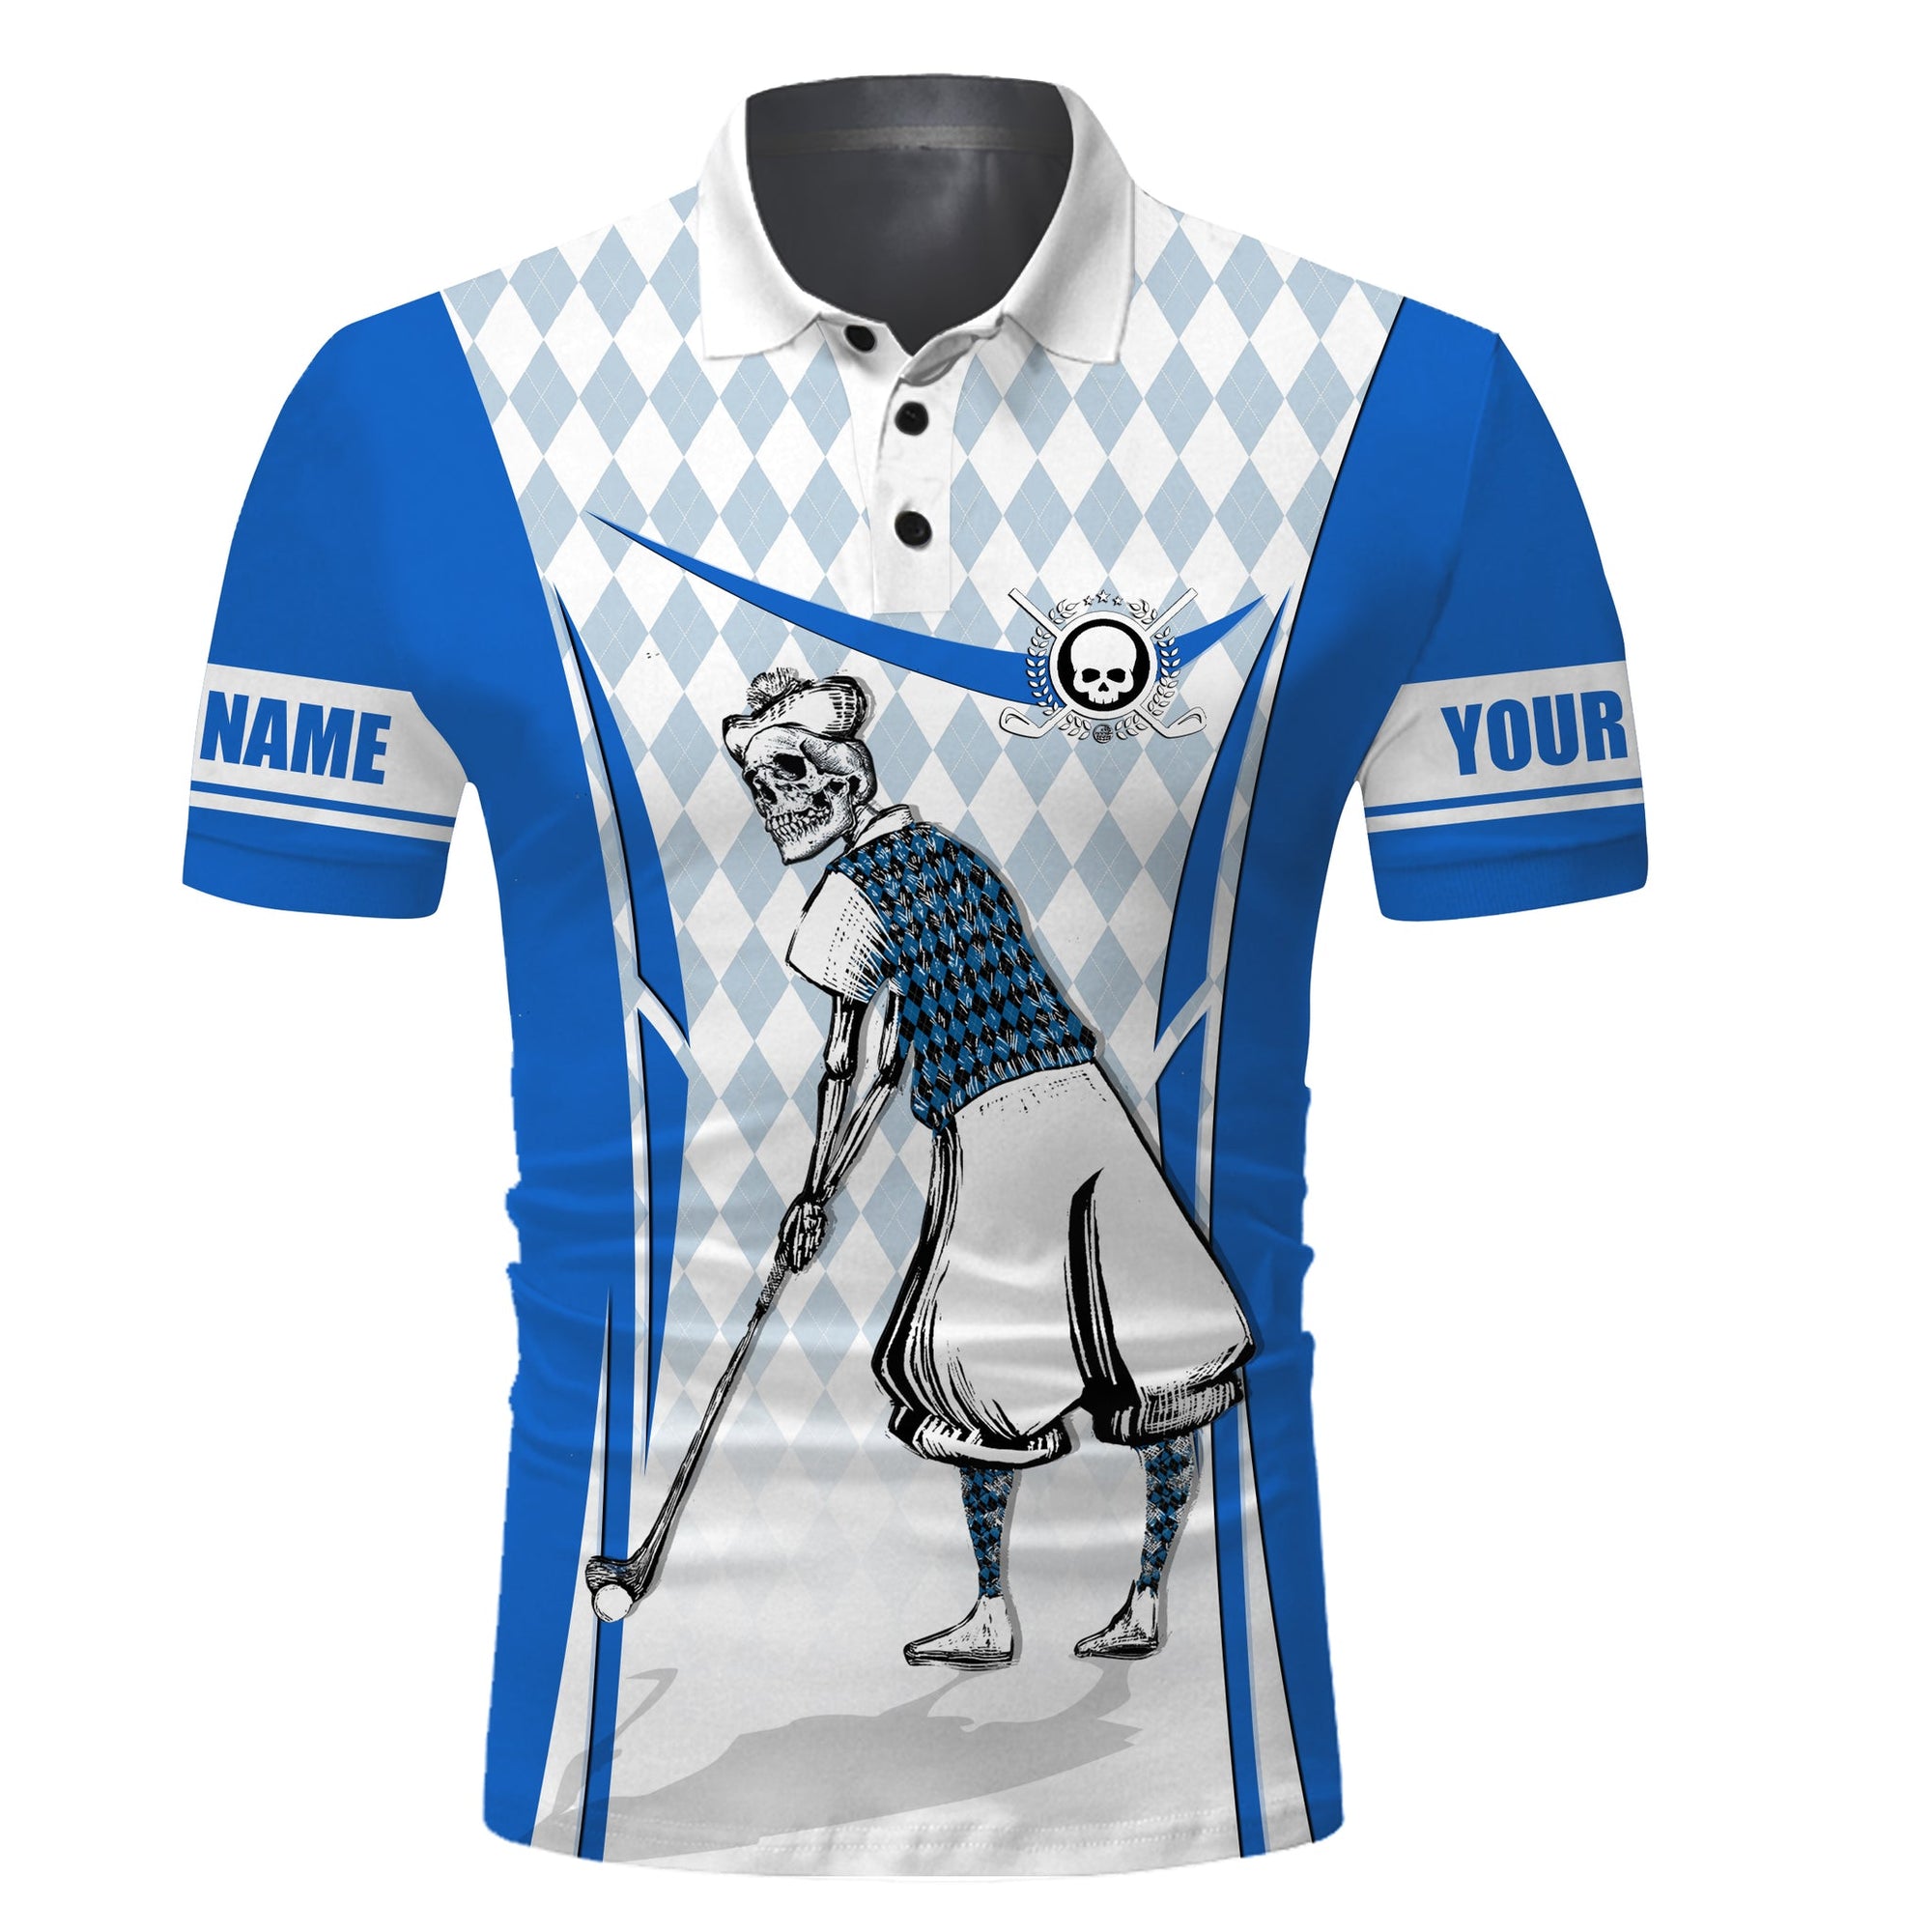 Golf Custom Name Men Polo Shirt - Blue Argyle Pattern Skull Apparel - Personalized Best Gift For Golf Lover, Team, Golfer